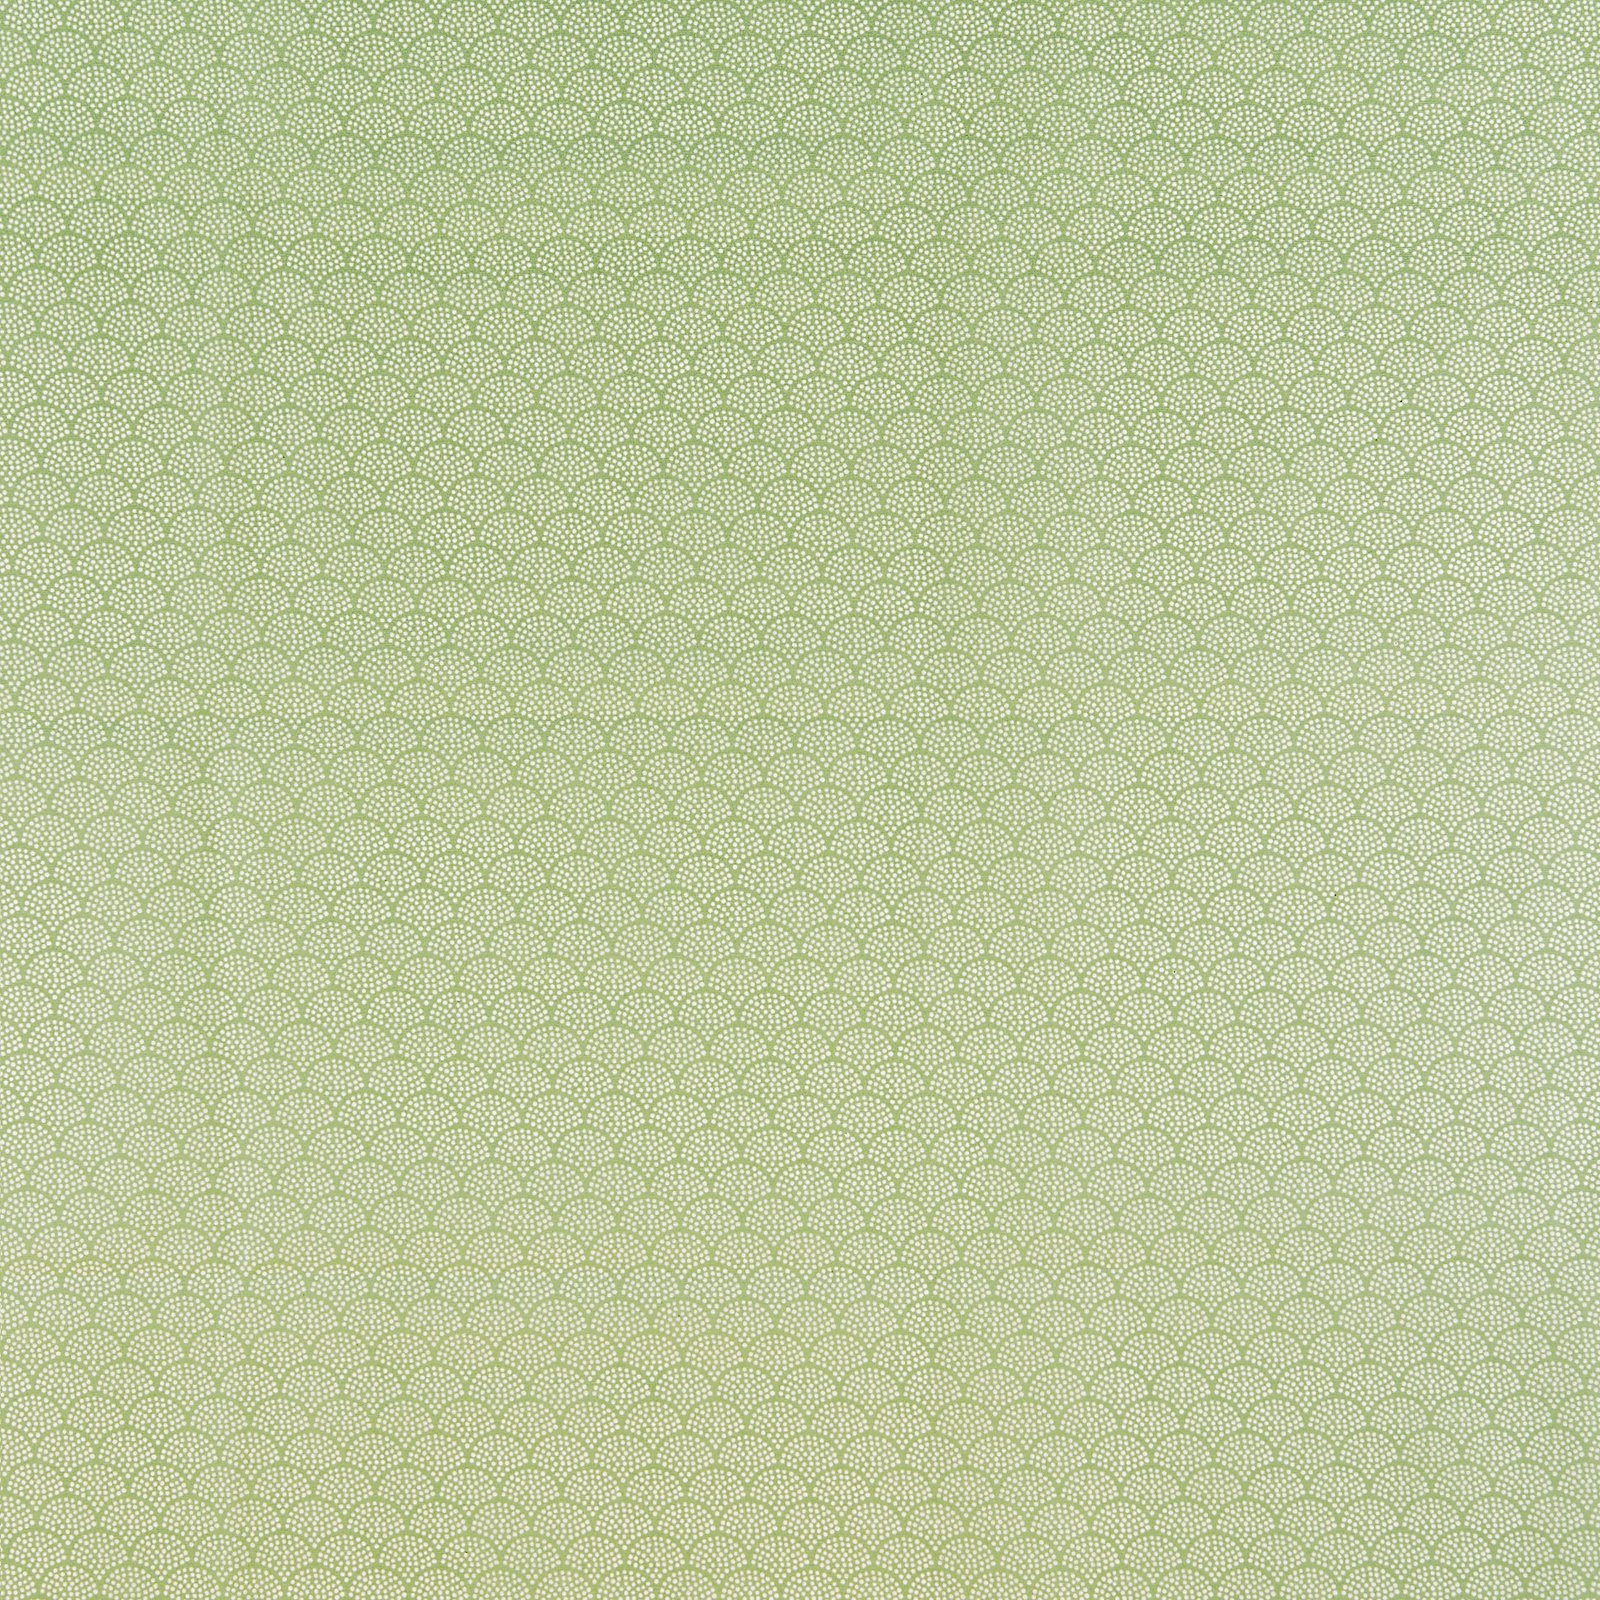 Tekstilvoksduk m lys grønn /hvite buer 870343_pack_sp